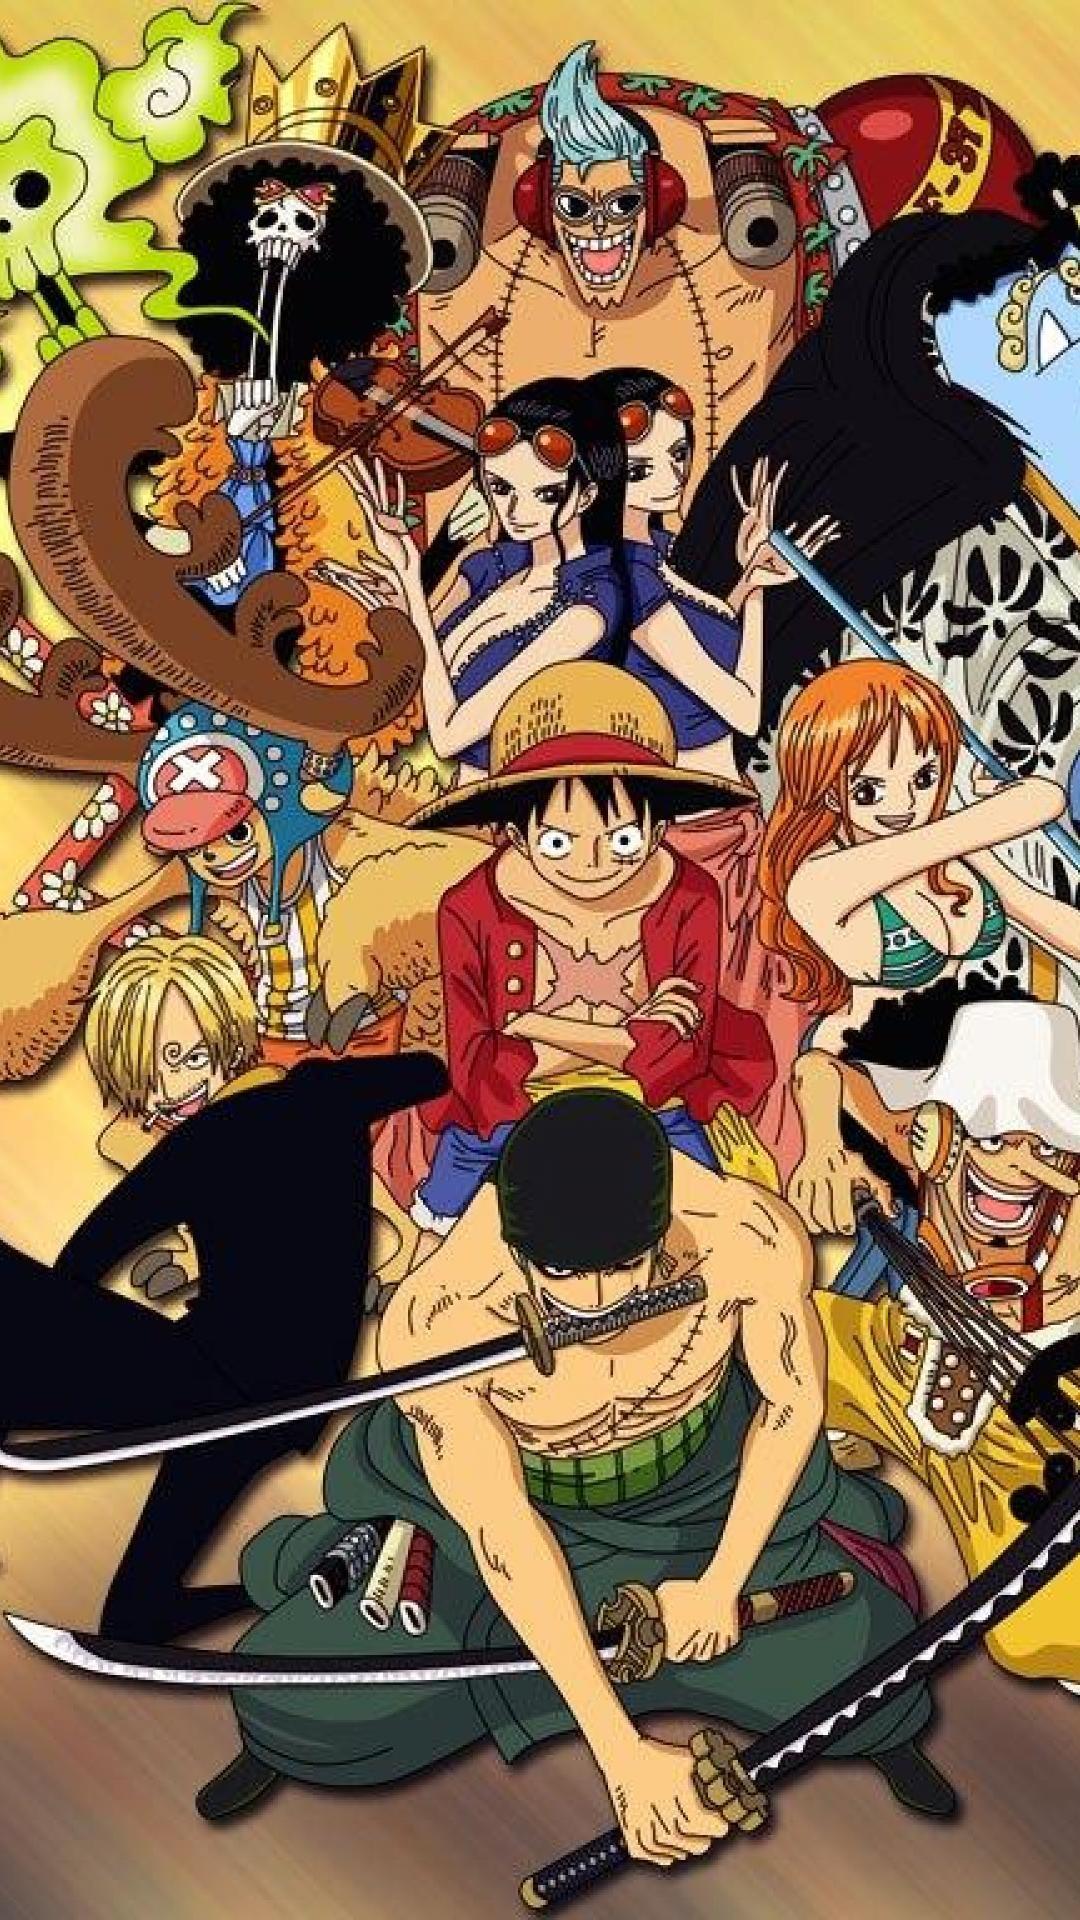 Nếu bạn là một fan của One Piece, hãy cài đặt ngay những hình nền iPhone 11 One Piece để tận hưởng anime tuyệt vời này ở mọi thời điểm và mọi nơi. Độ phân giải 4K sẽ làm cho những bức hình nền sống động và chân thực hơn bao giờ hết.